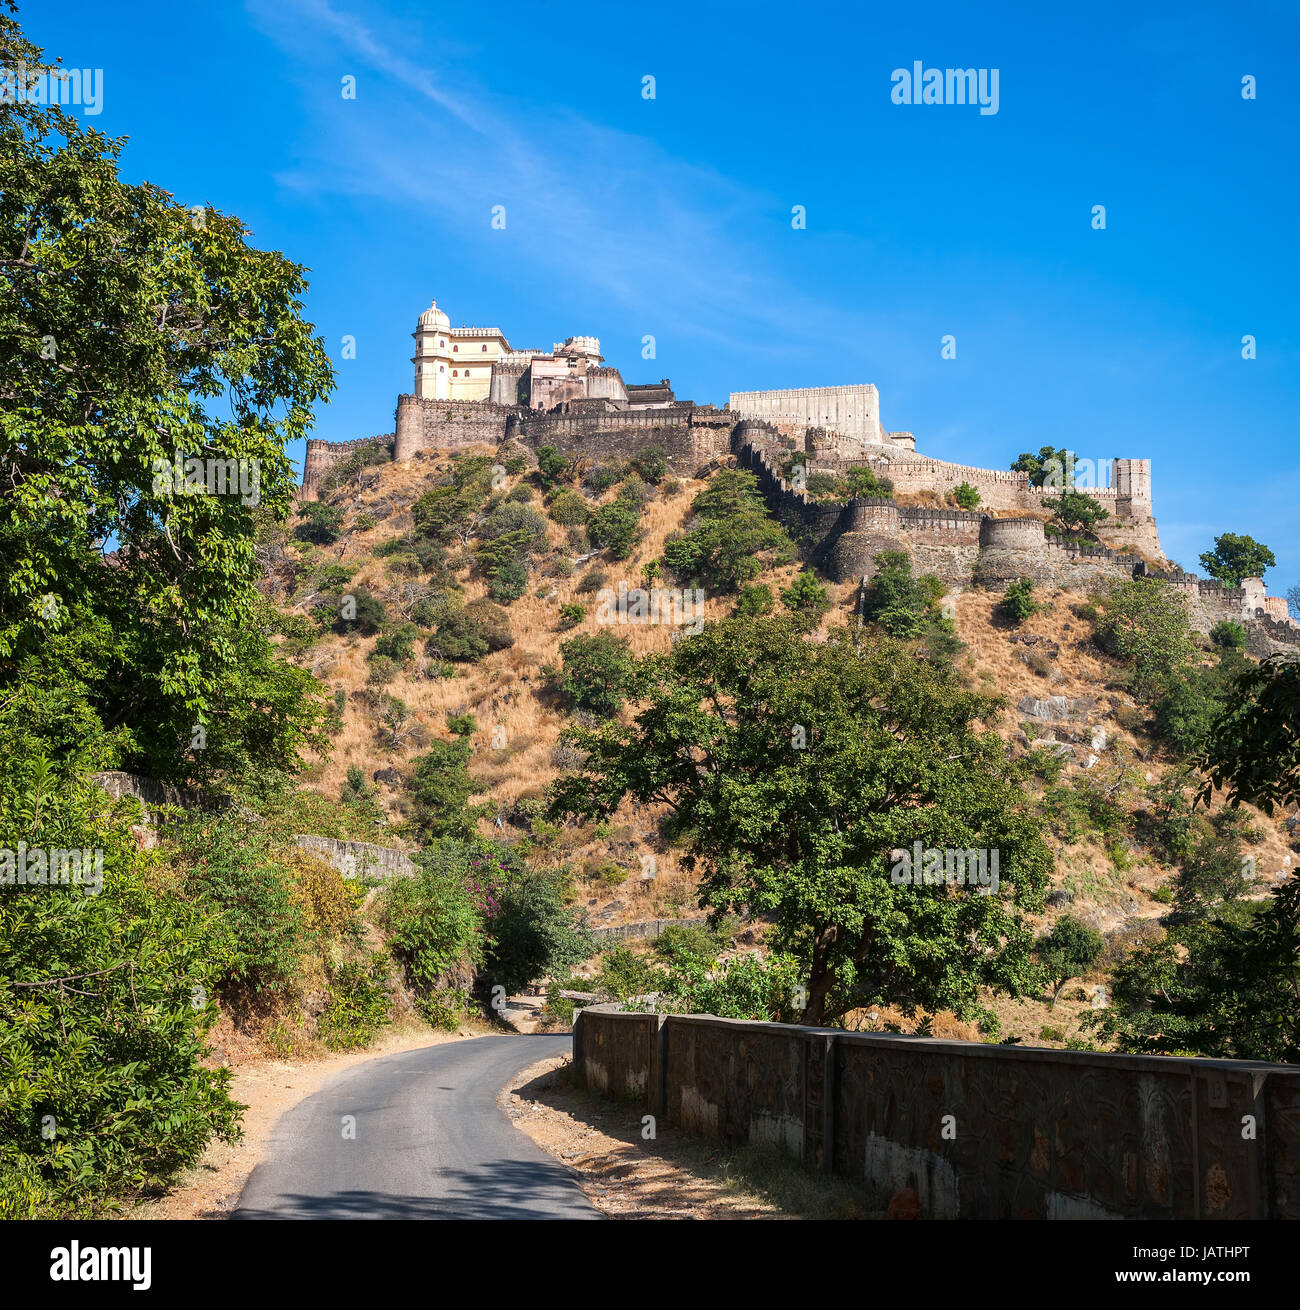 Kumbhalgarh Fort, Rajasthan, Indien.  Kumbhalgarh ist eine Mewar Festung im Rajsamand Bezirk von Rajasthan Zustand im Westen Indiens und ist weltbekannt für seine große Geschichte und Architektur. Stockfoto